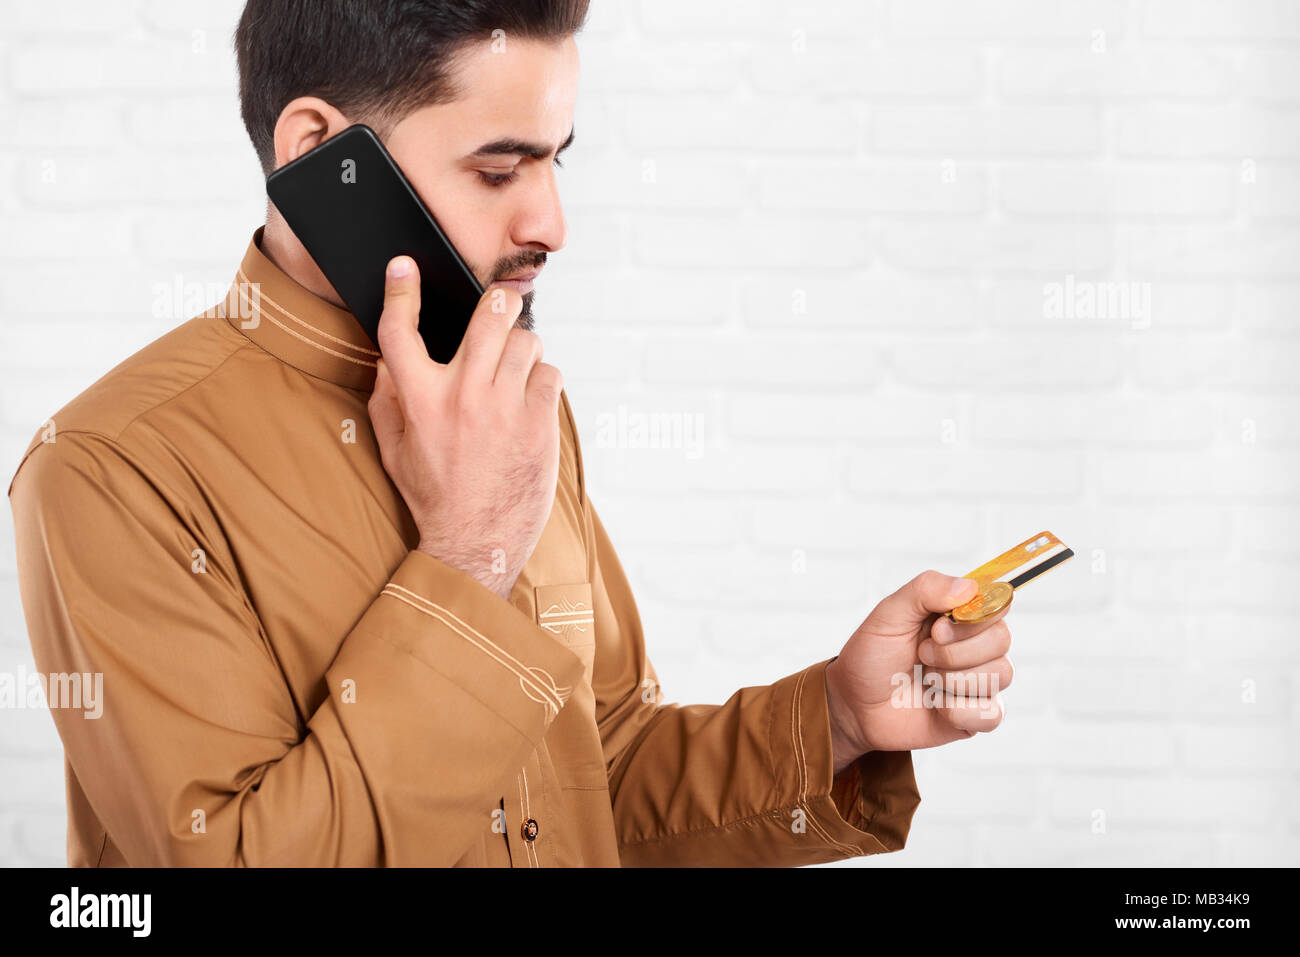 Le jeune homme d'Oman continue de carte de crédit et parle au téléphone. Il a un grand bitcoin d'or dans ses mains. Il porte la chemise beige avec un motif. Un homme se tient sur le fond blanc de studio. Banque D'Images